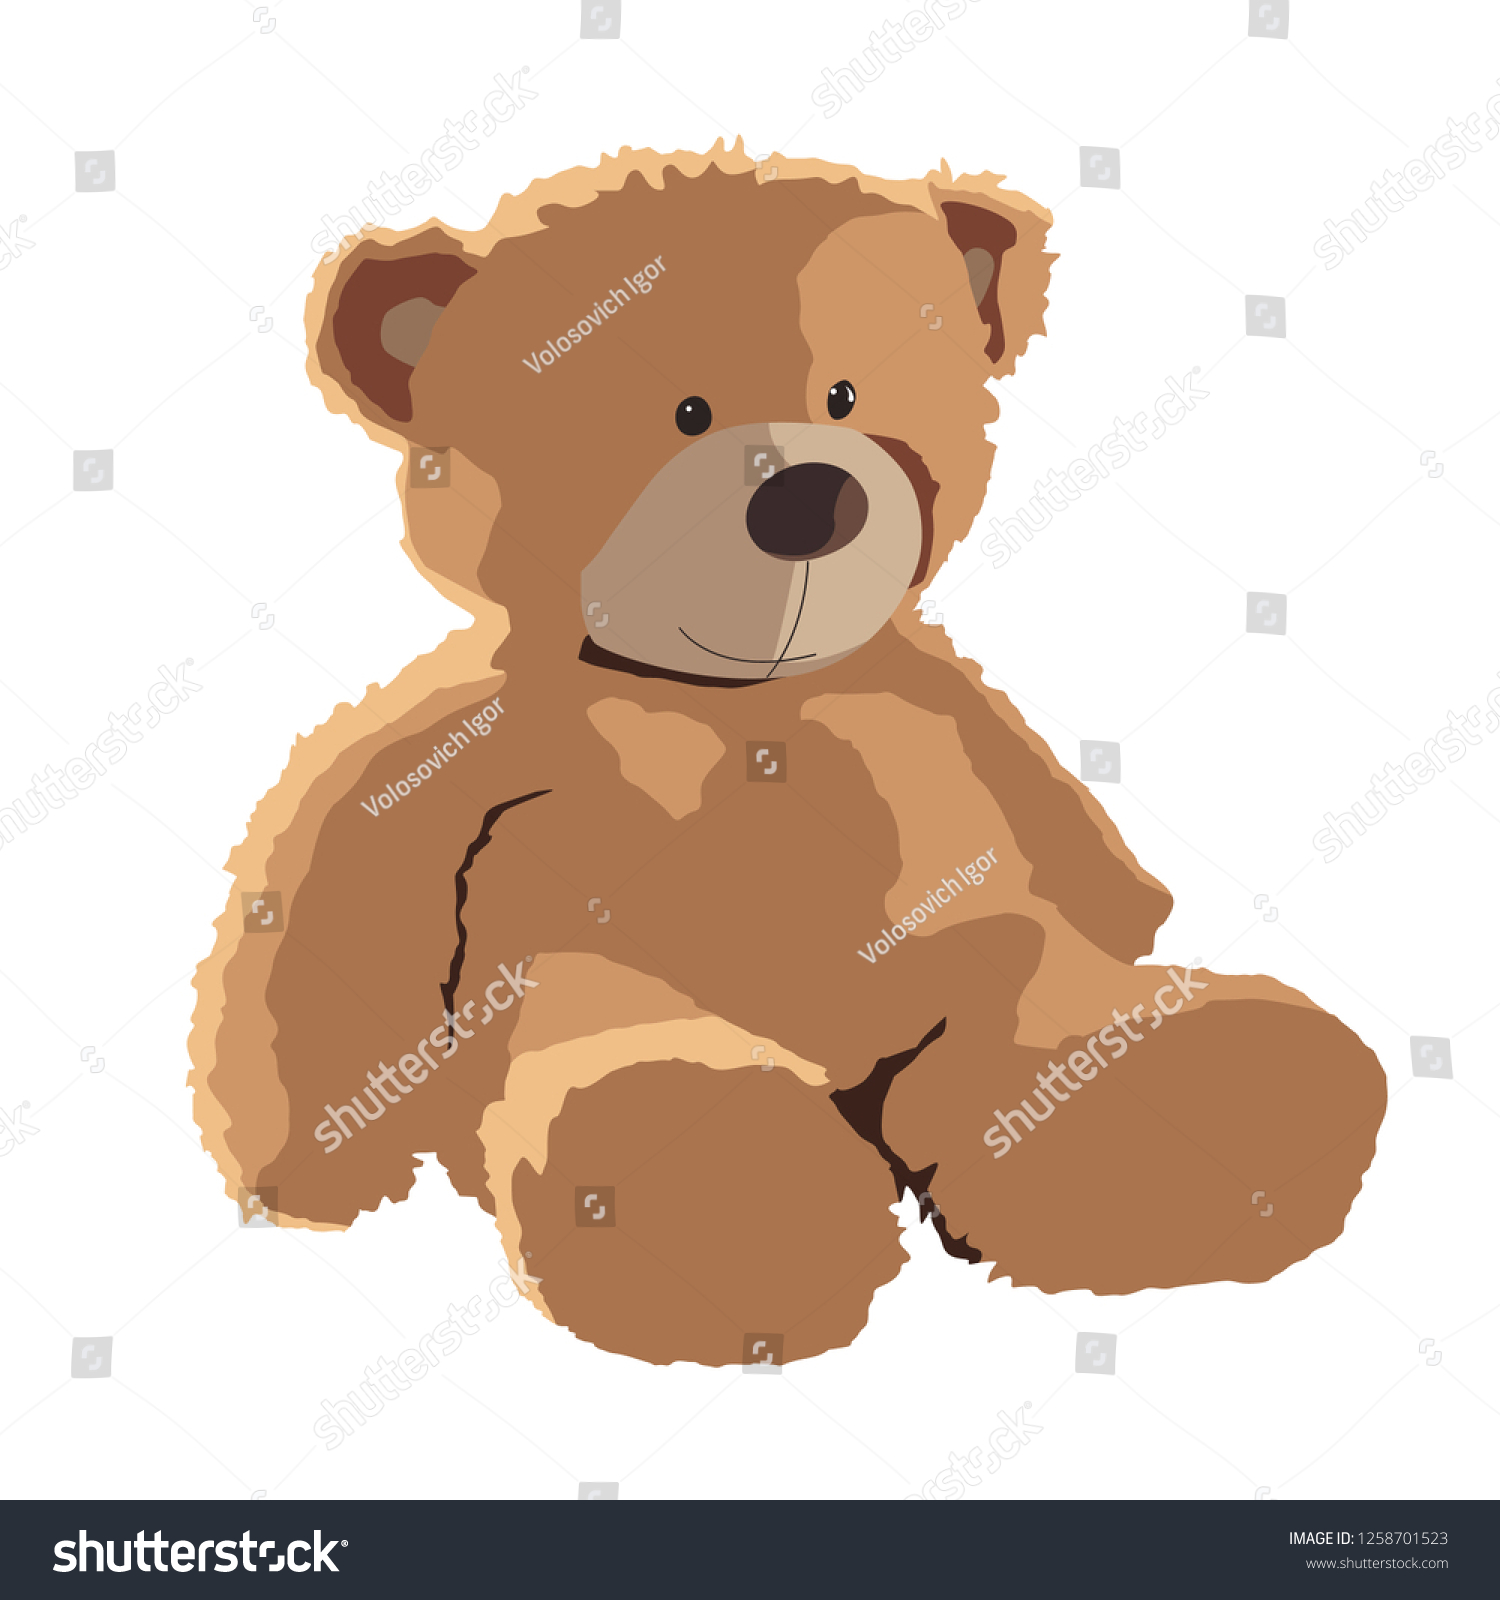 realistic teddy bear